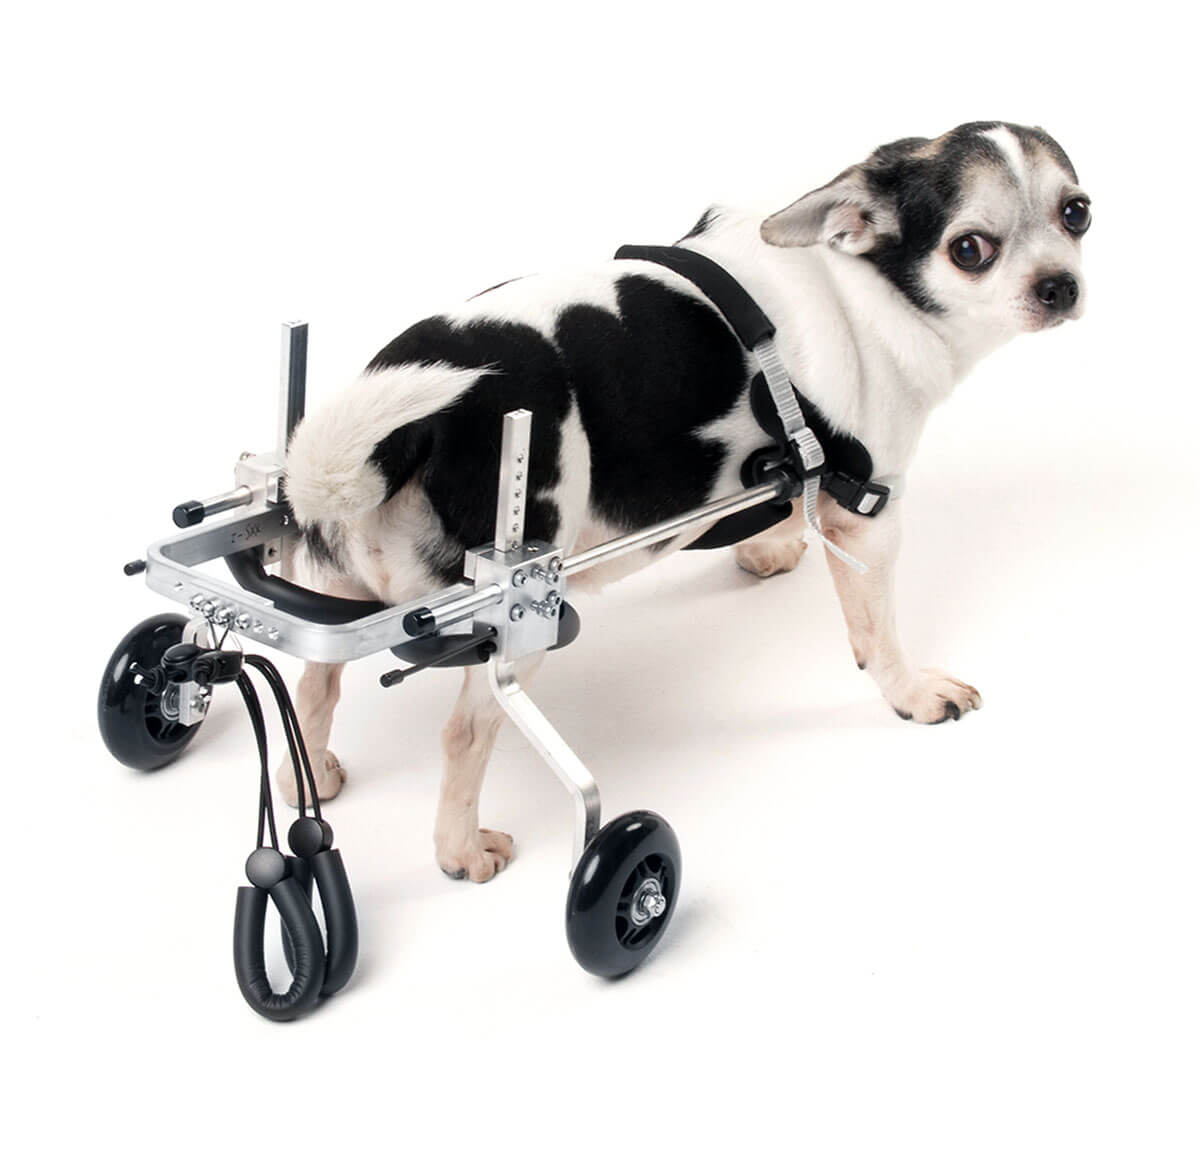 Купить инвалидную коляску для собаки на задние лапы (заказать тележку)